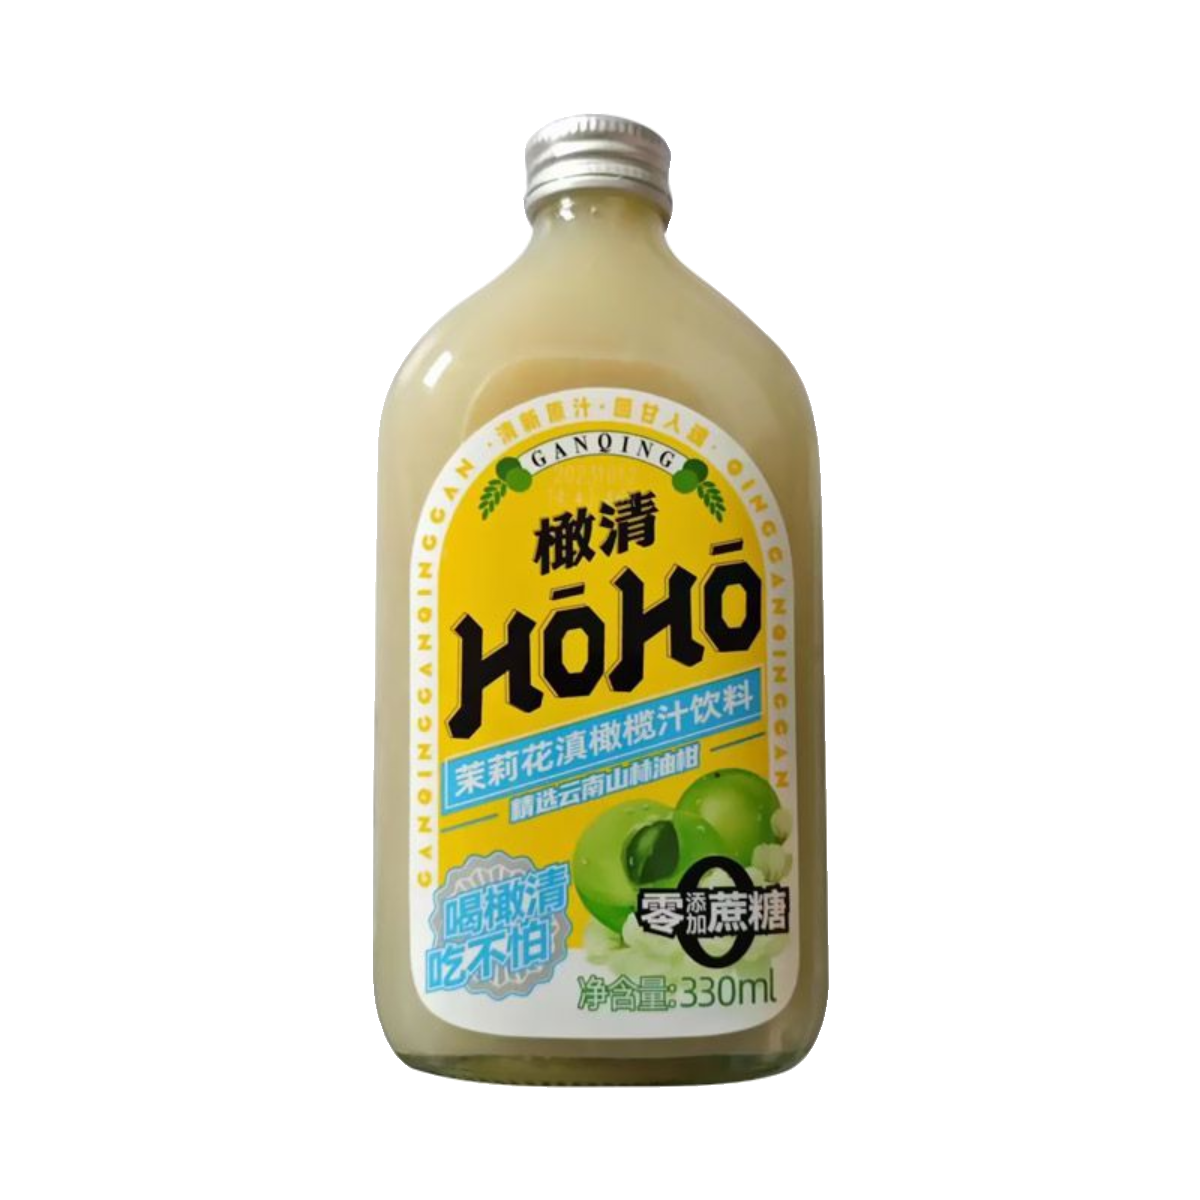 每日橄清茉莉花滇橄榄汁HOHO饮料330ml*6瓶装解腻果汁零添加蔗糖 - 图3